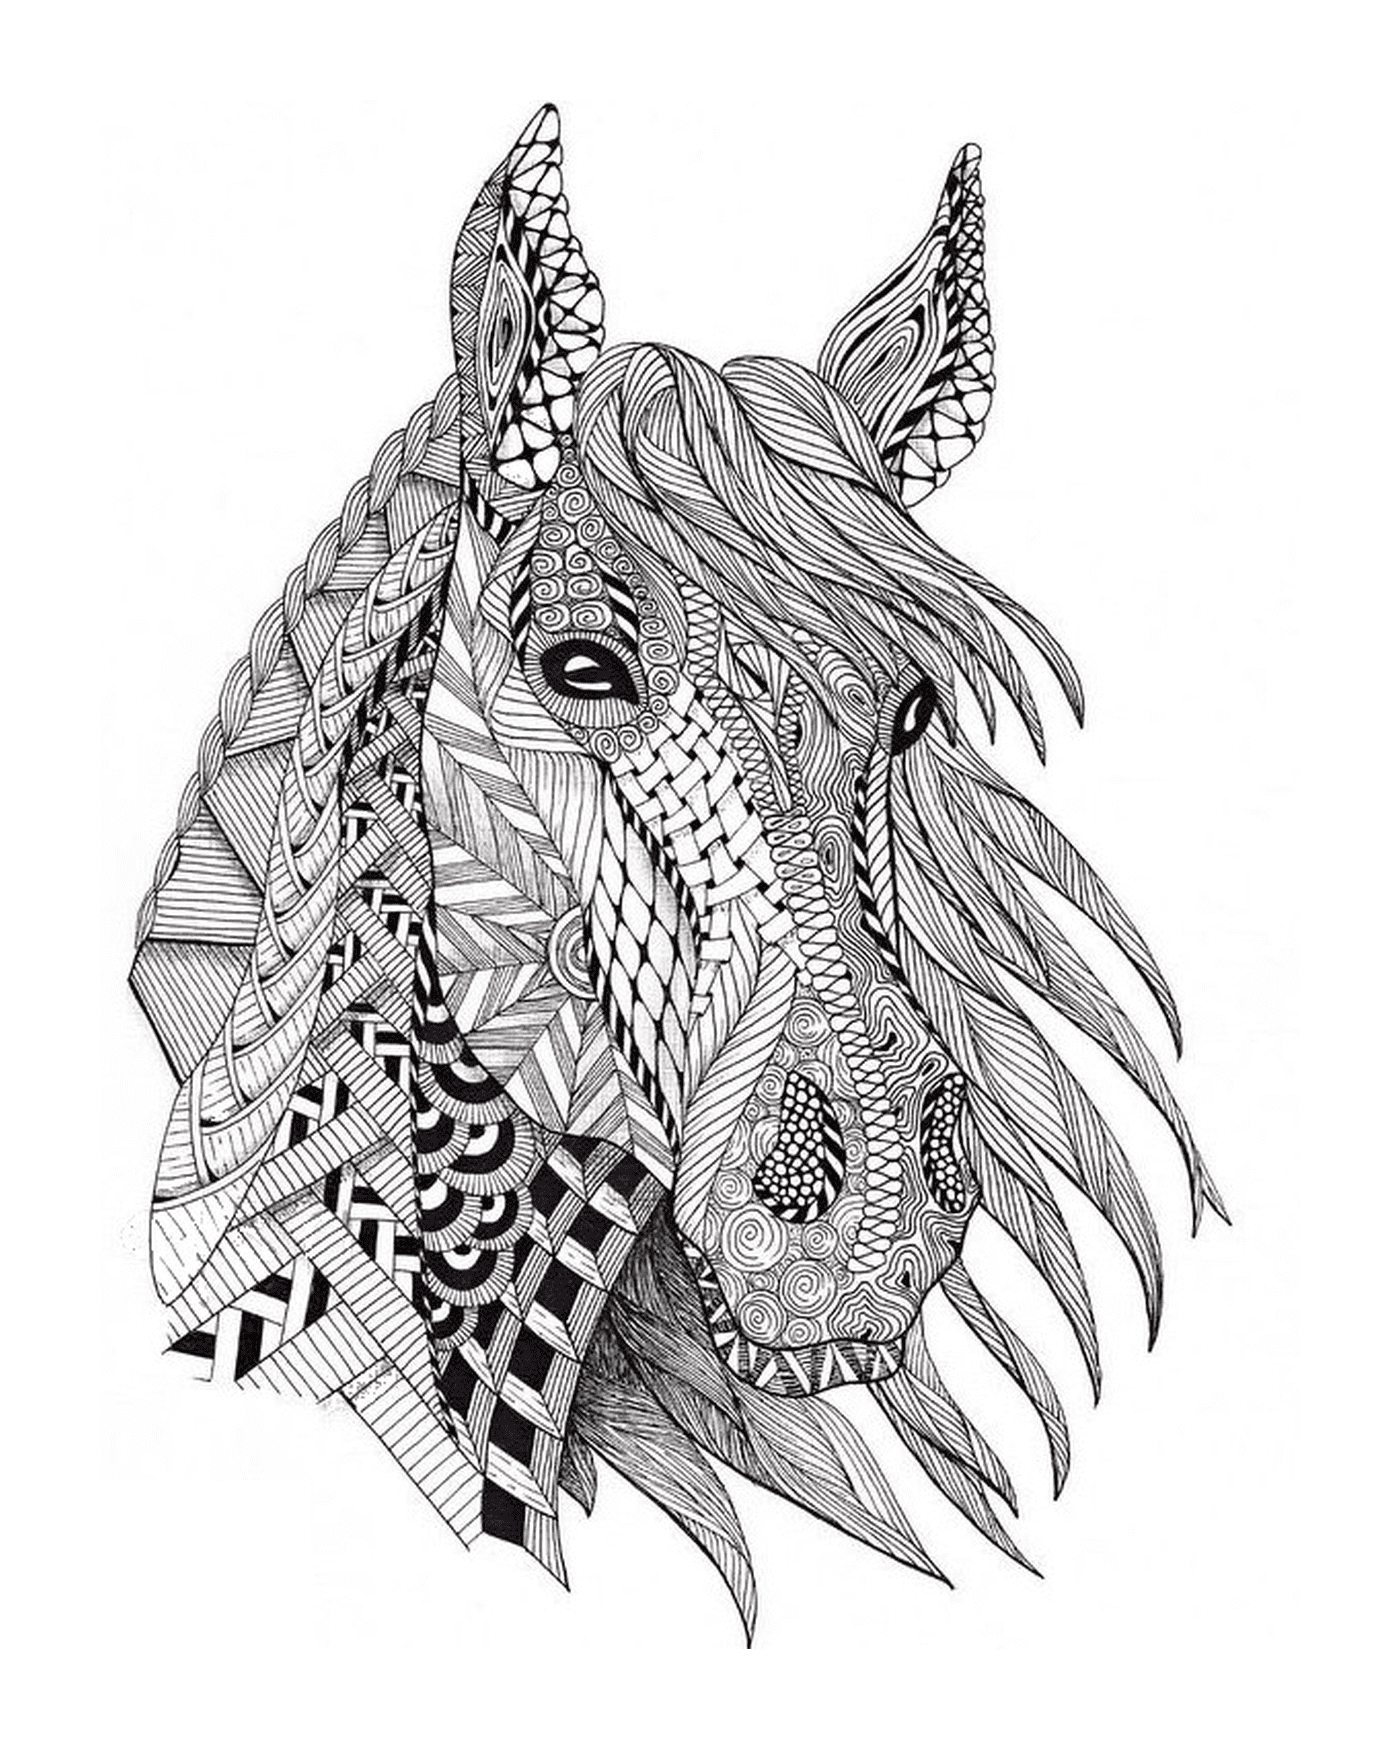  A cabeça de um cavalo com vários padrões 